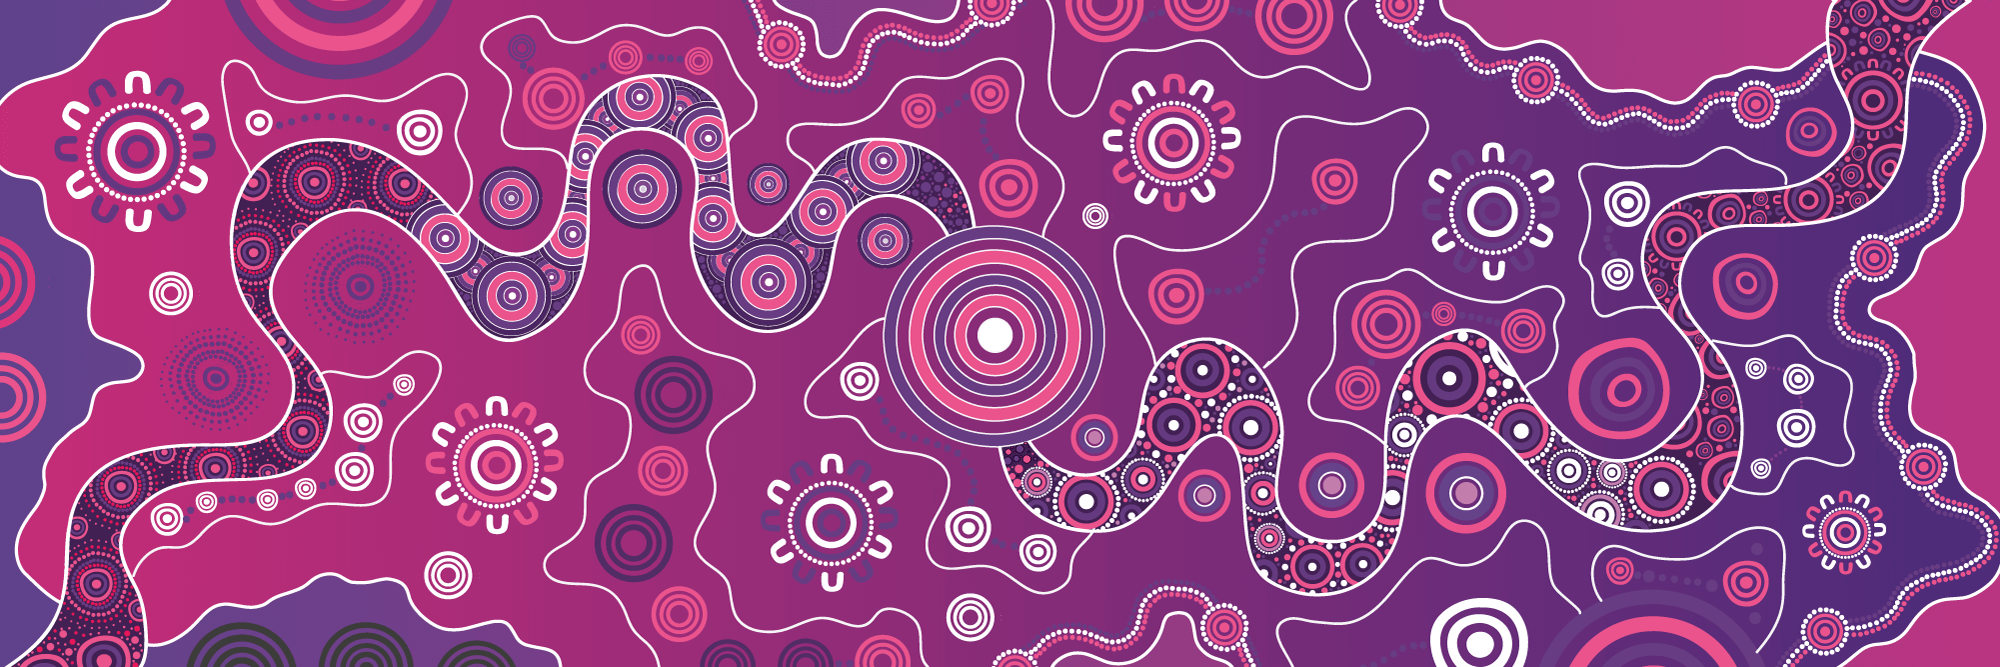 Cancer Institute NSW Aboriginal Artwork by Artist Dennis Golding